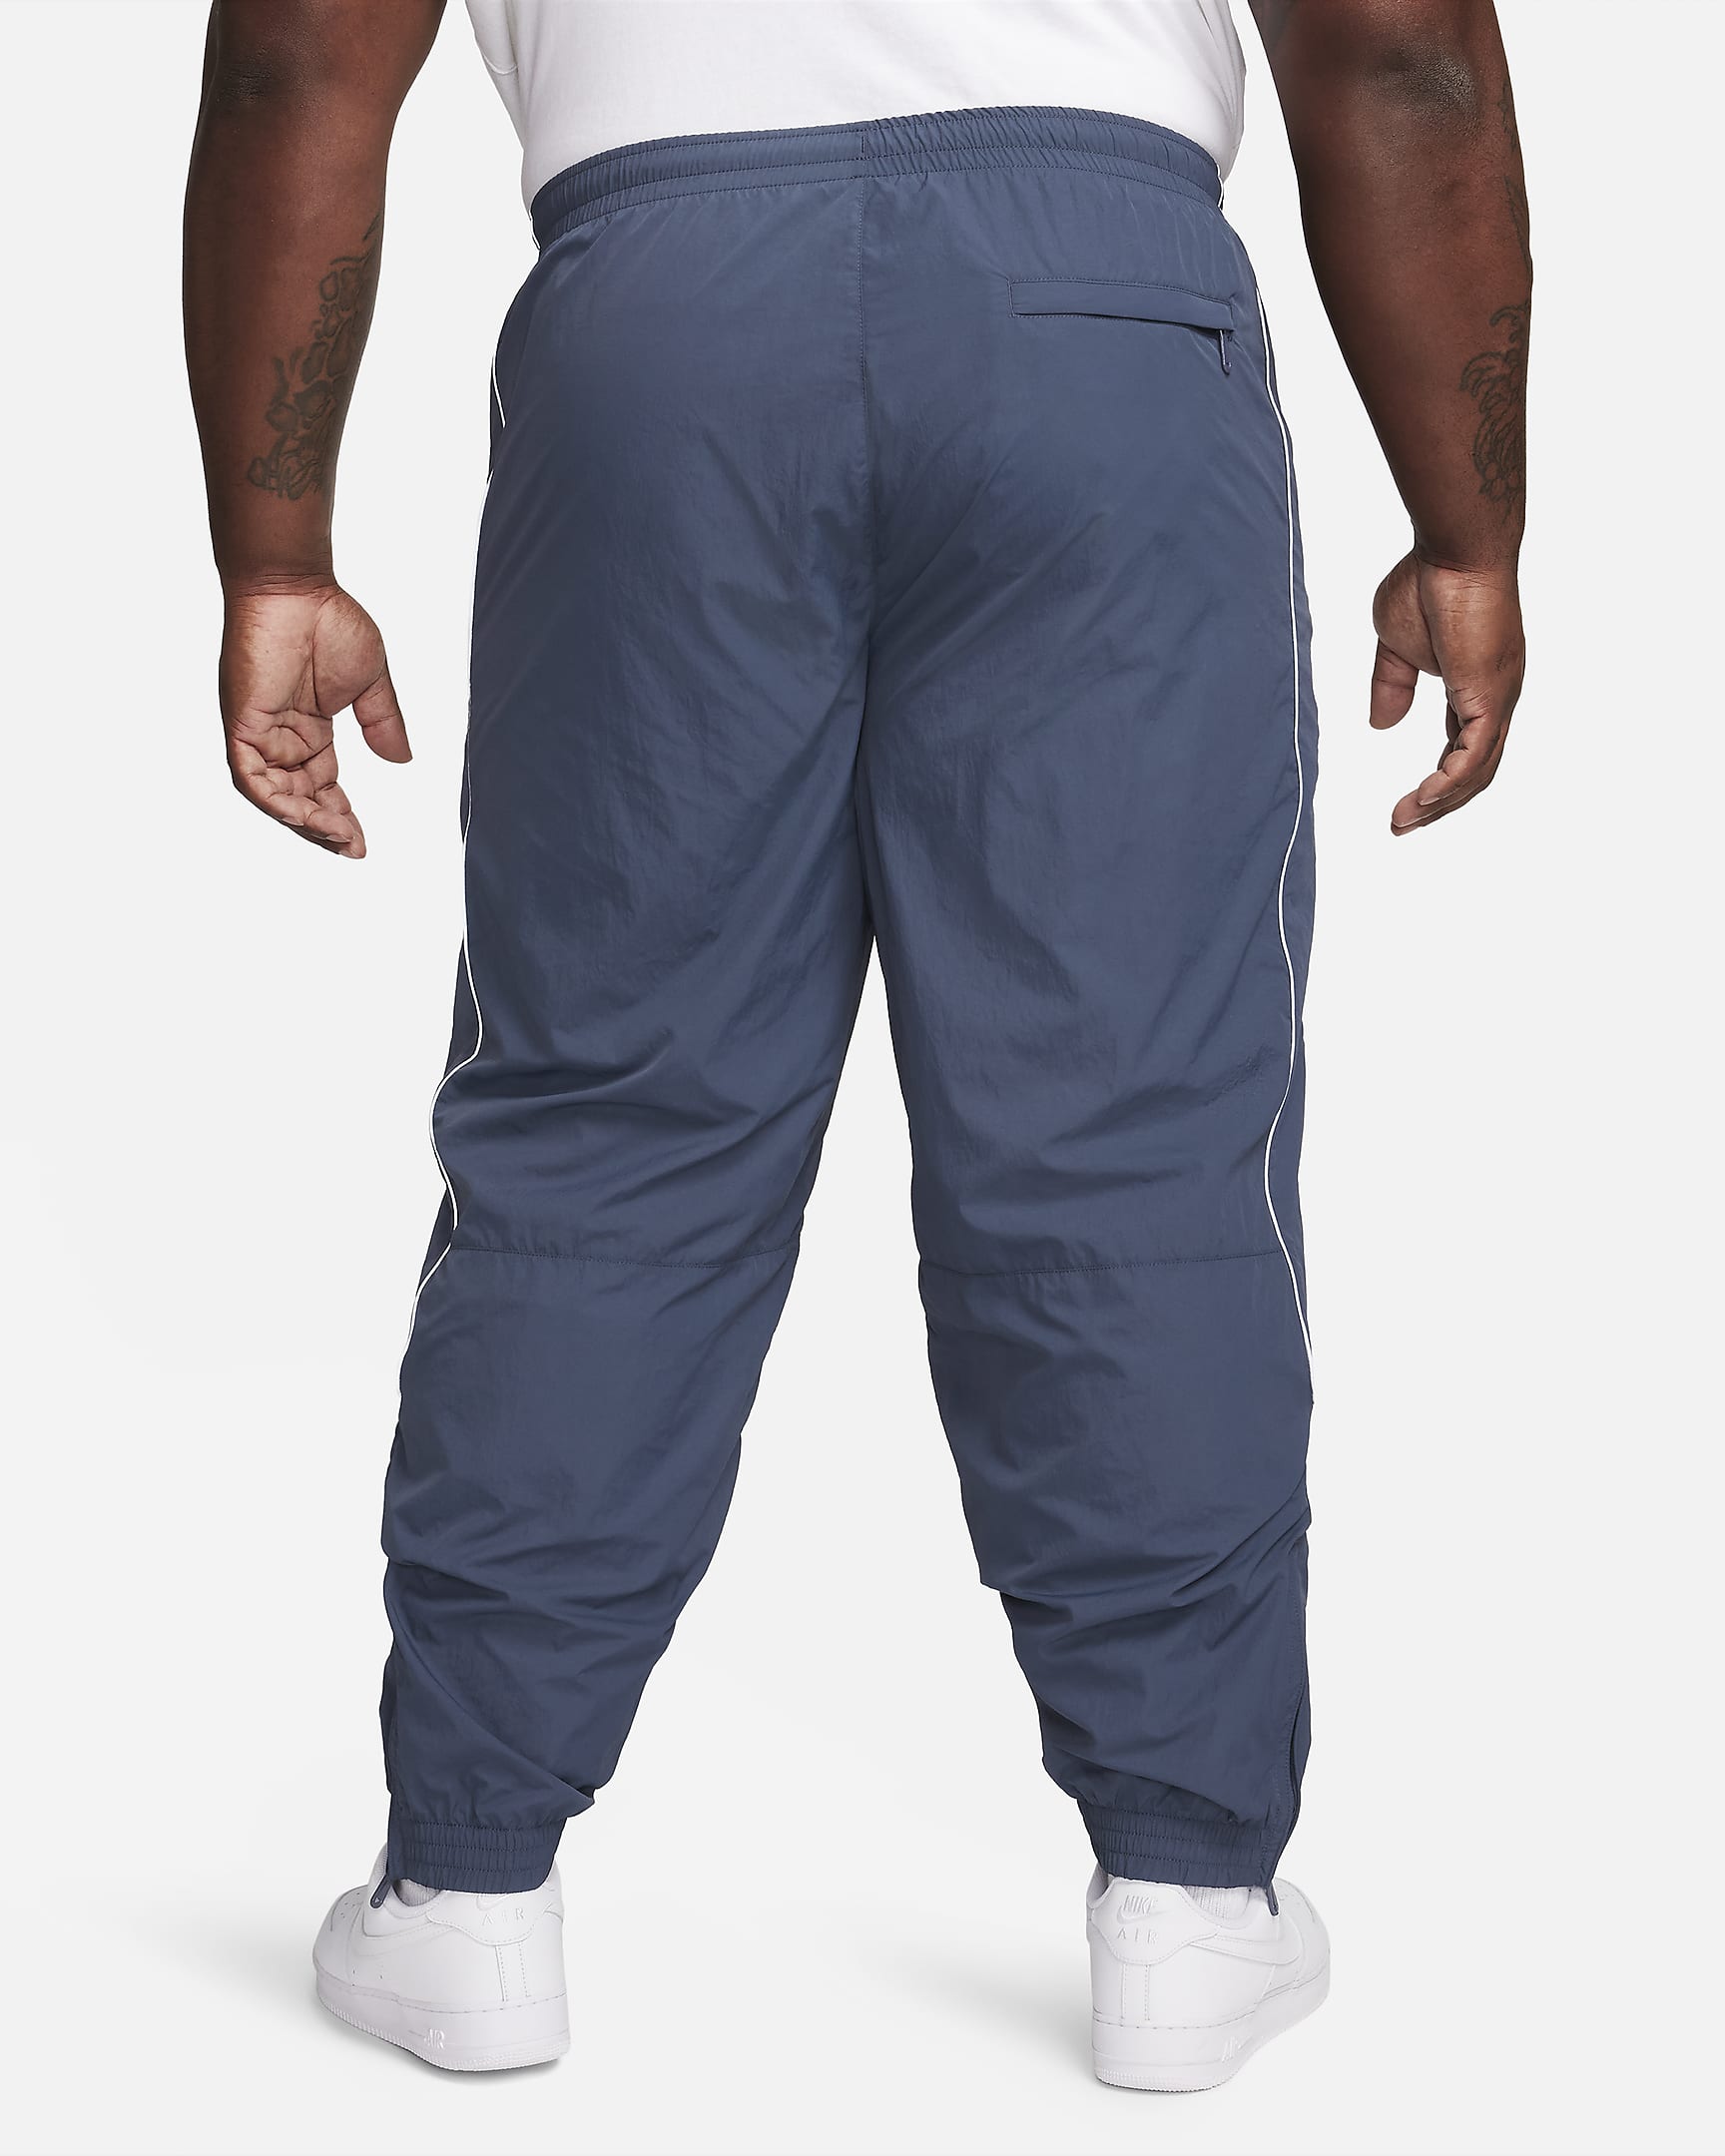 Pants de entrenamiento para hombre Nike Solo Swoosh. Nike.com